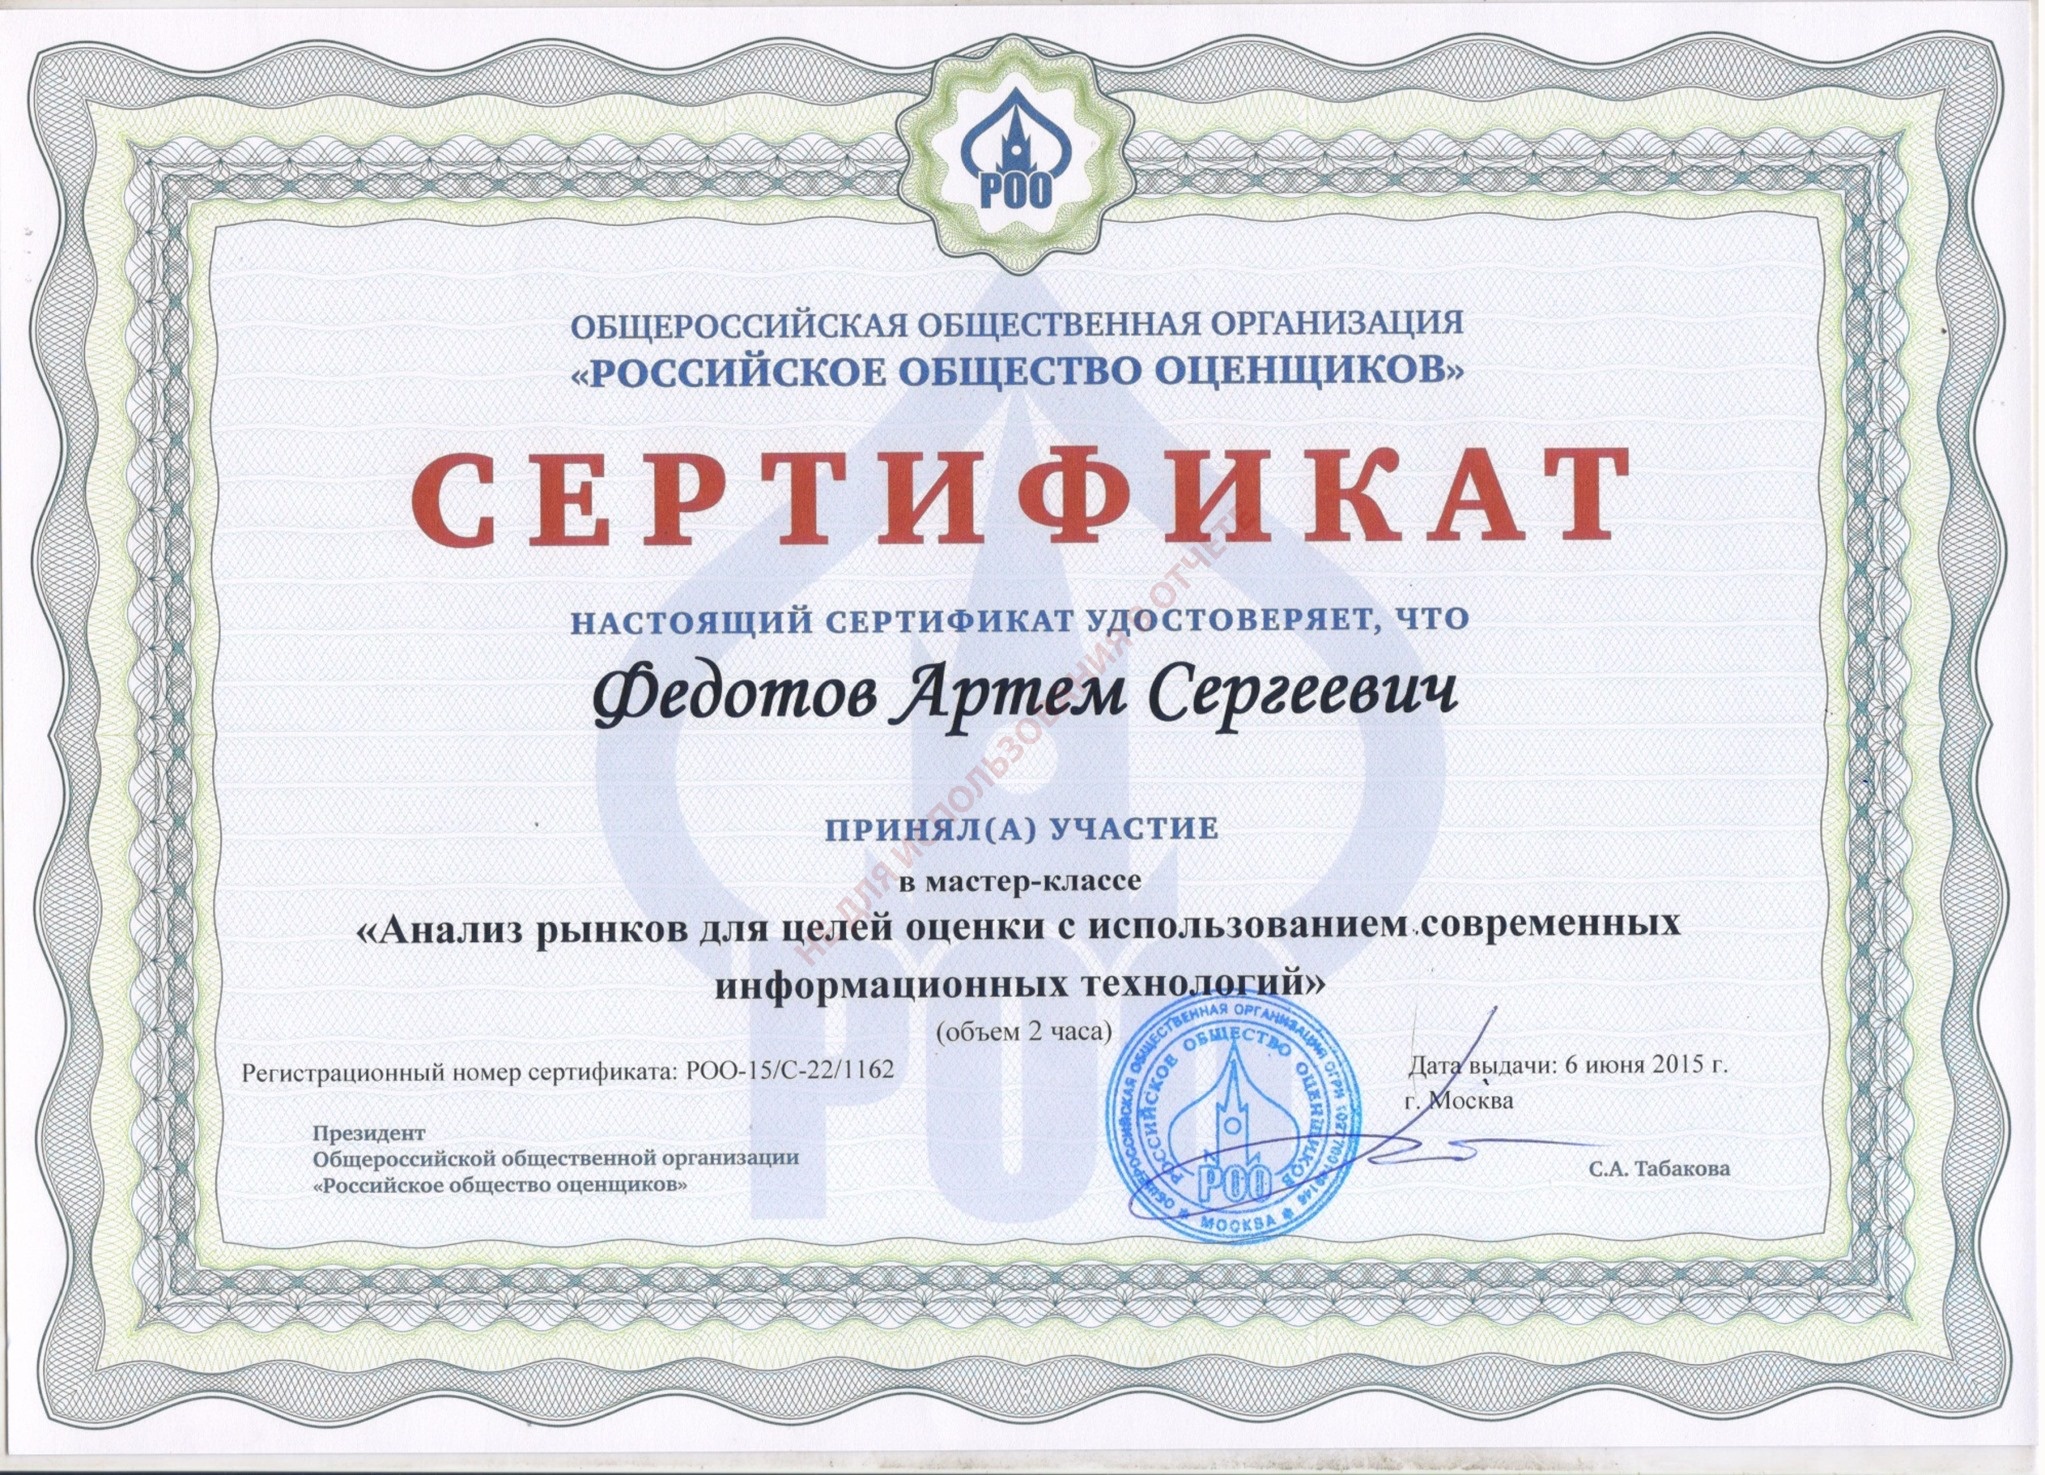 Сертификат. Анализ рынков для целей оценки